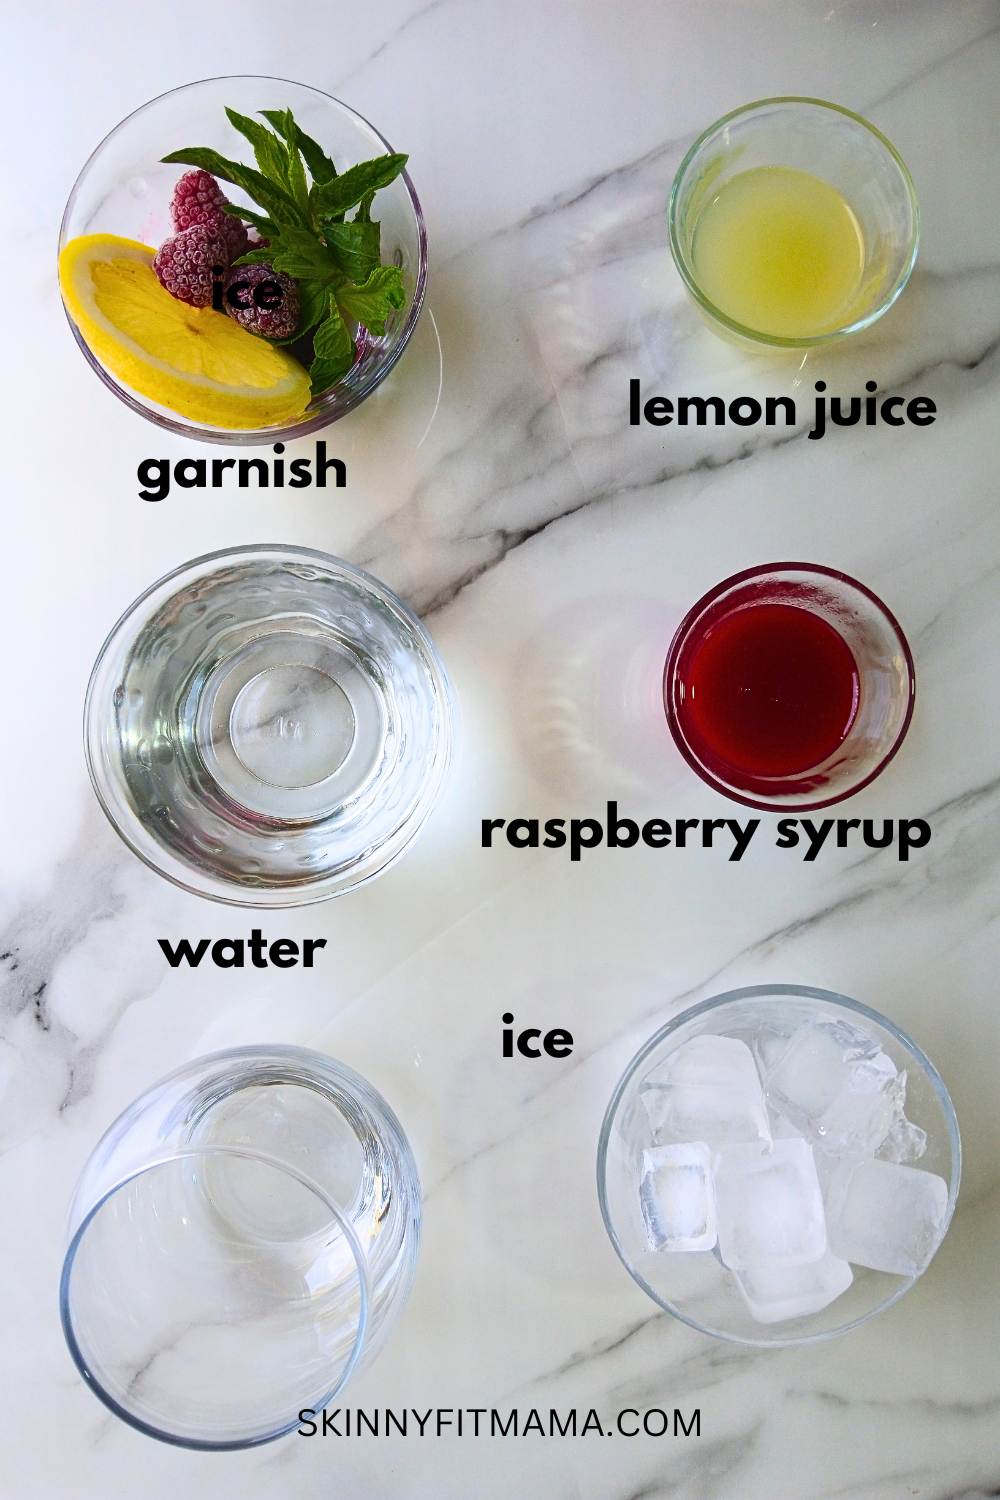 Raspberry lemonade ingredients